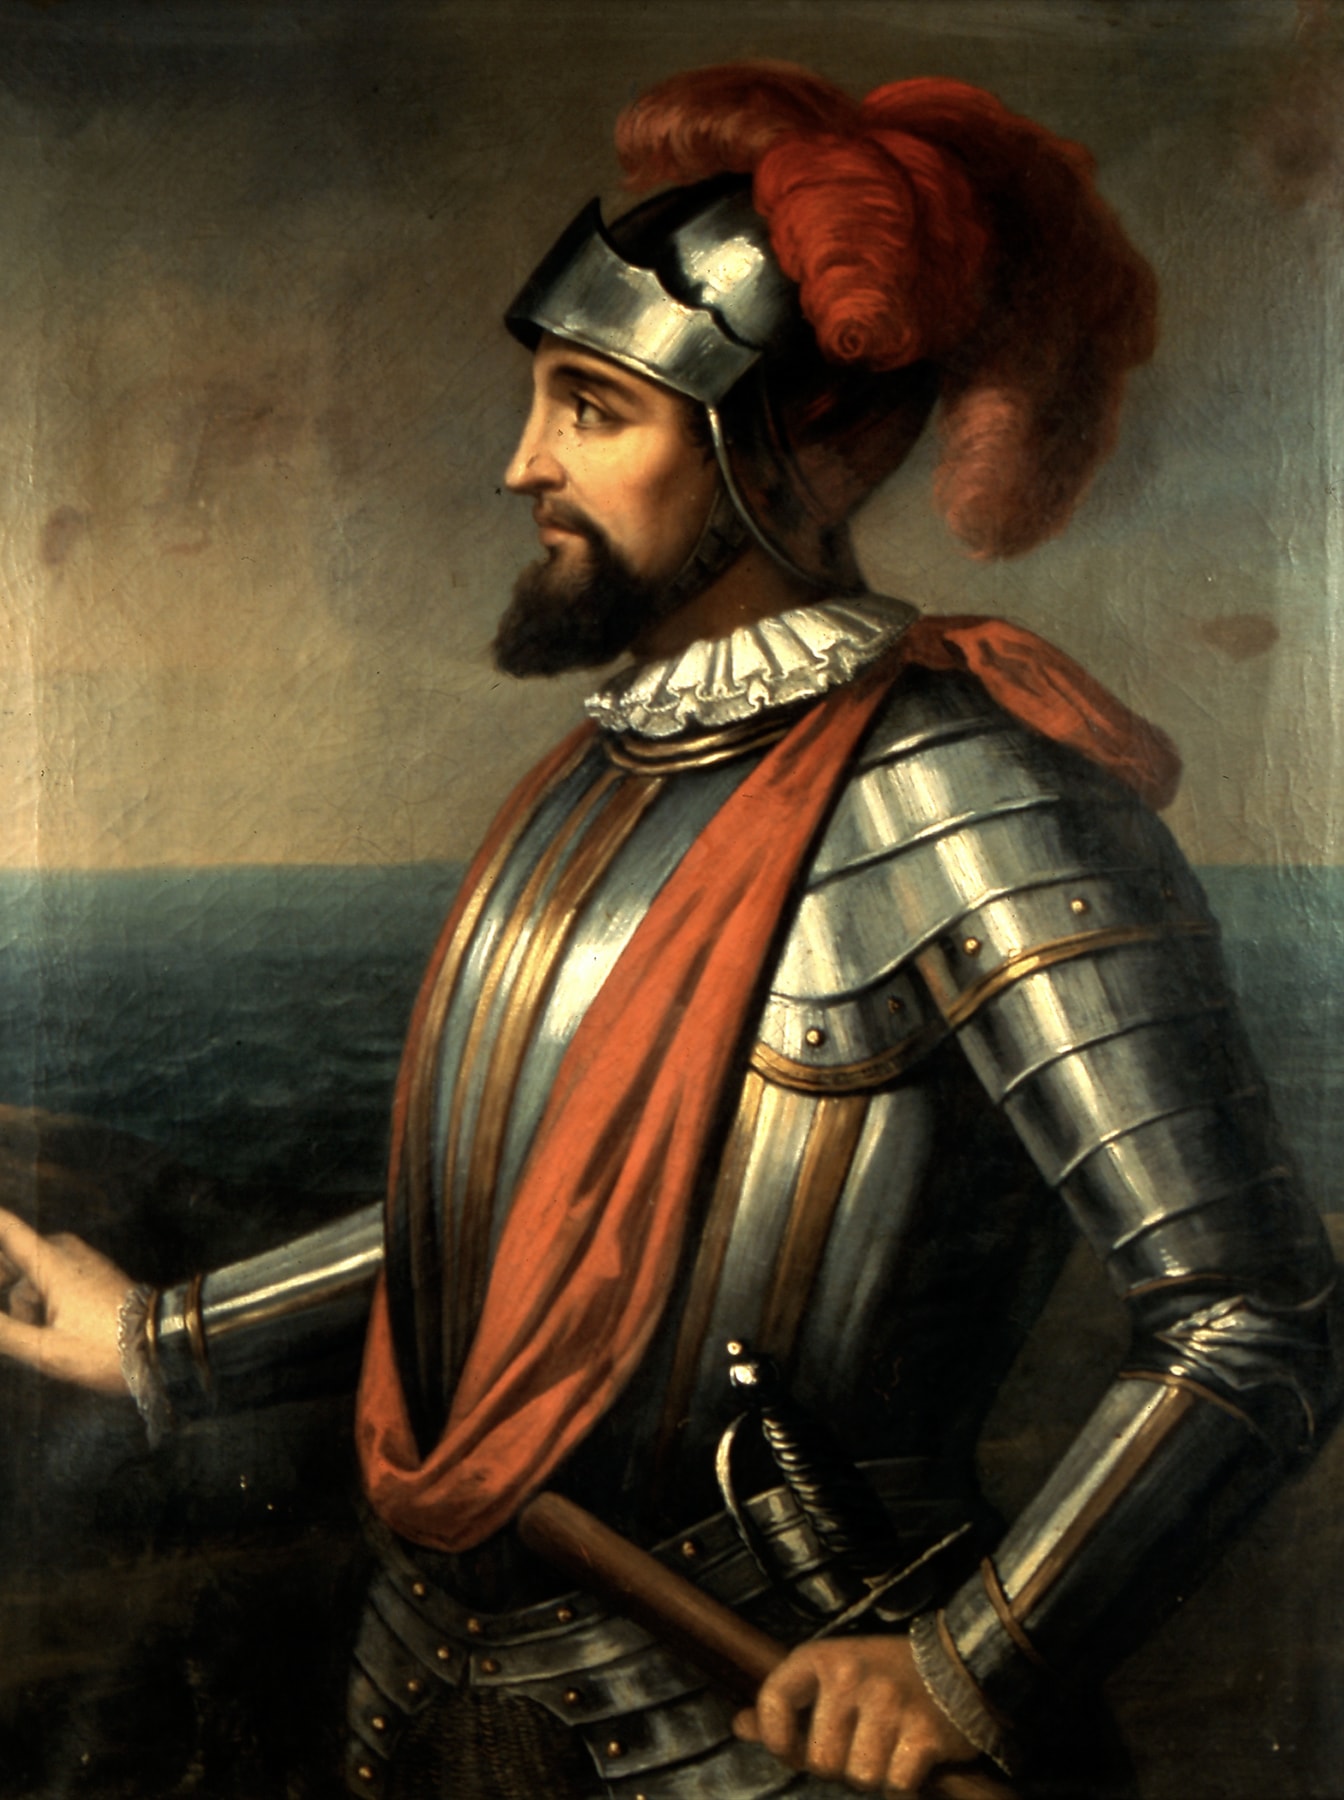 Vasco Núñez de Balboa